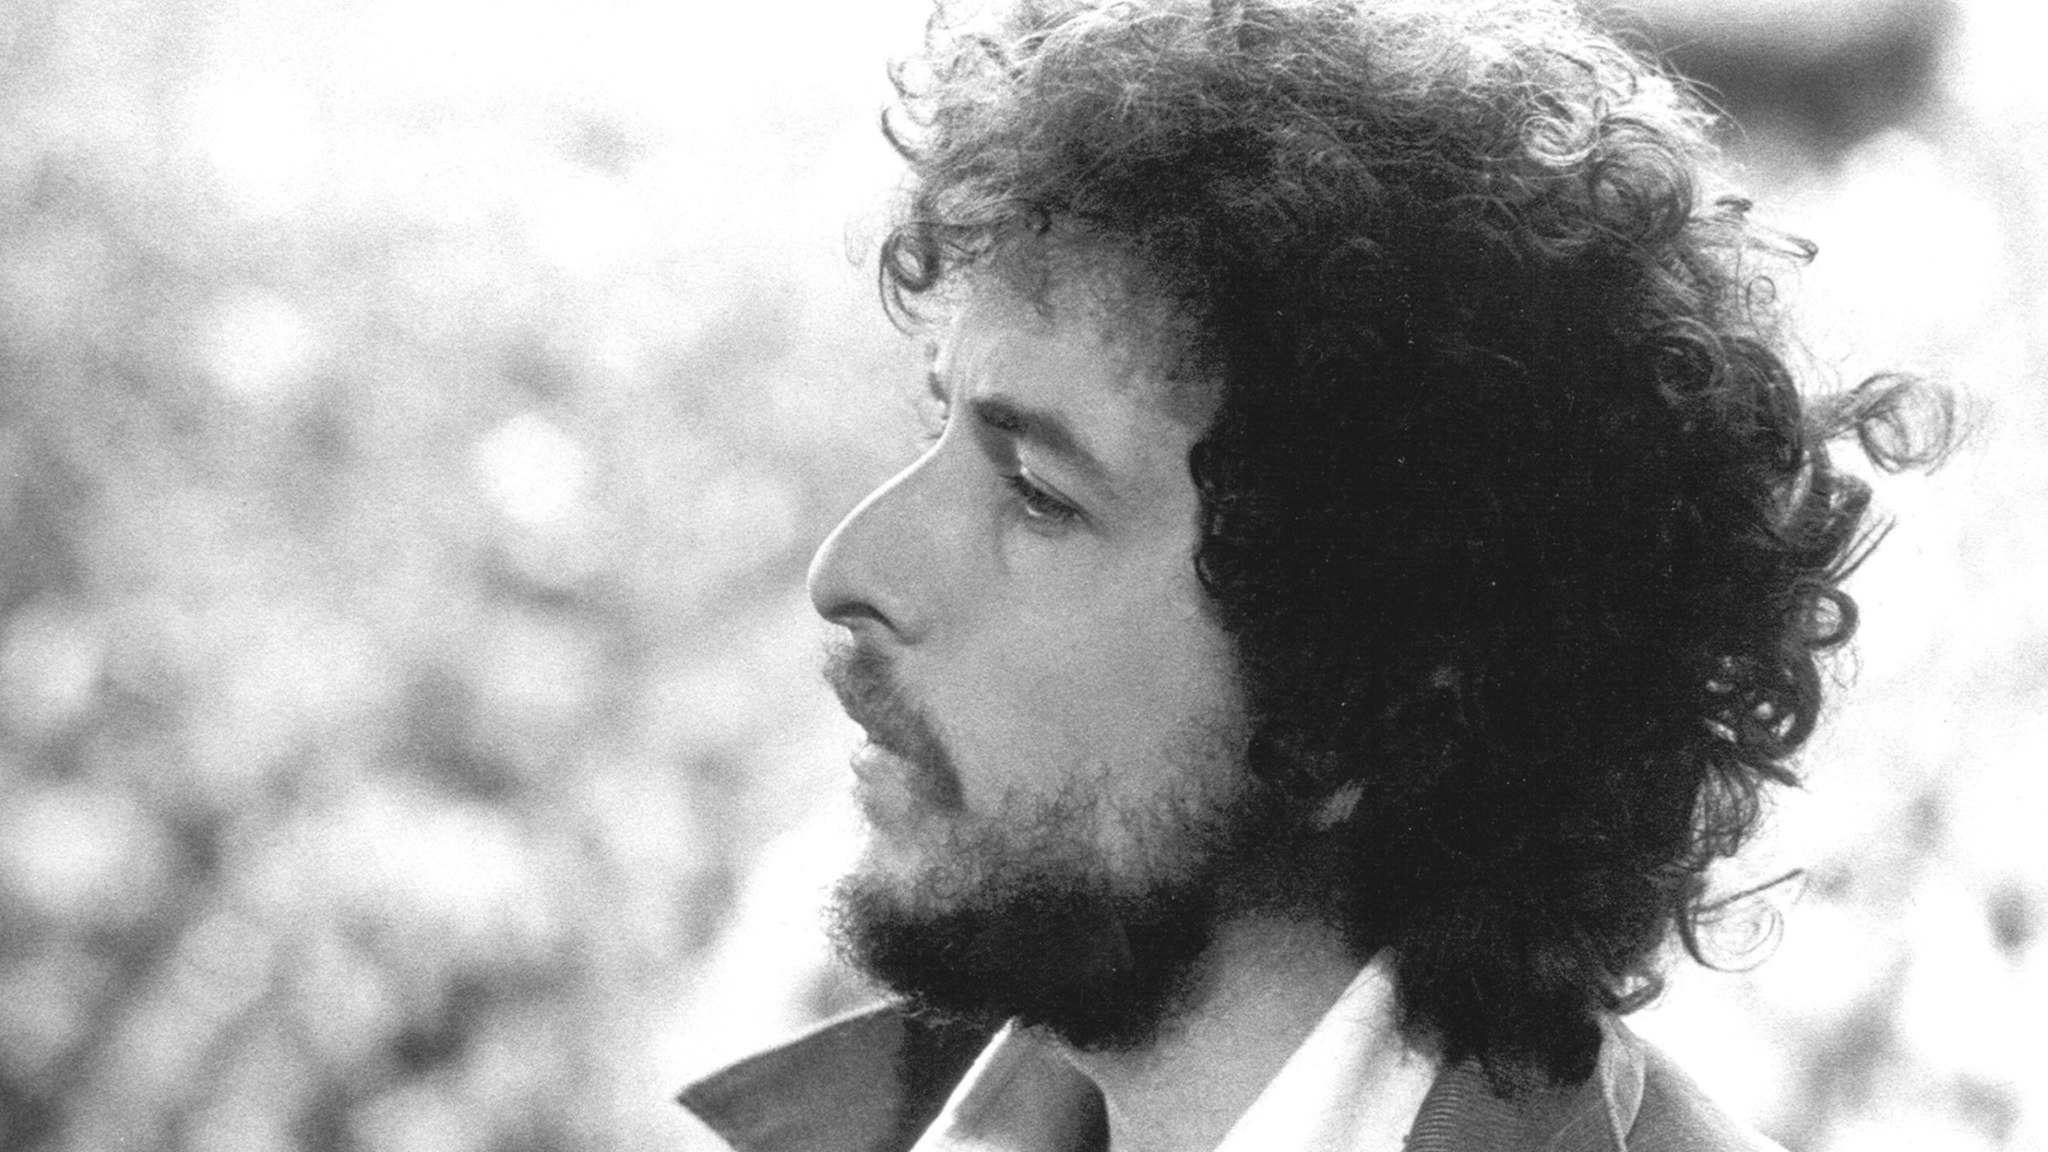 Singer/Songwriter Bob Dylan performs at Kezar Stadium in San Francisco, California, March 23, 1975.